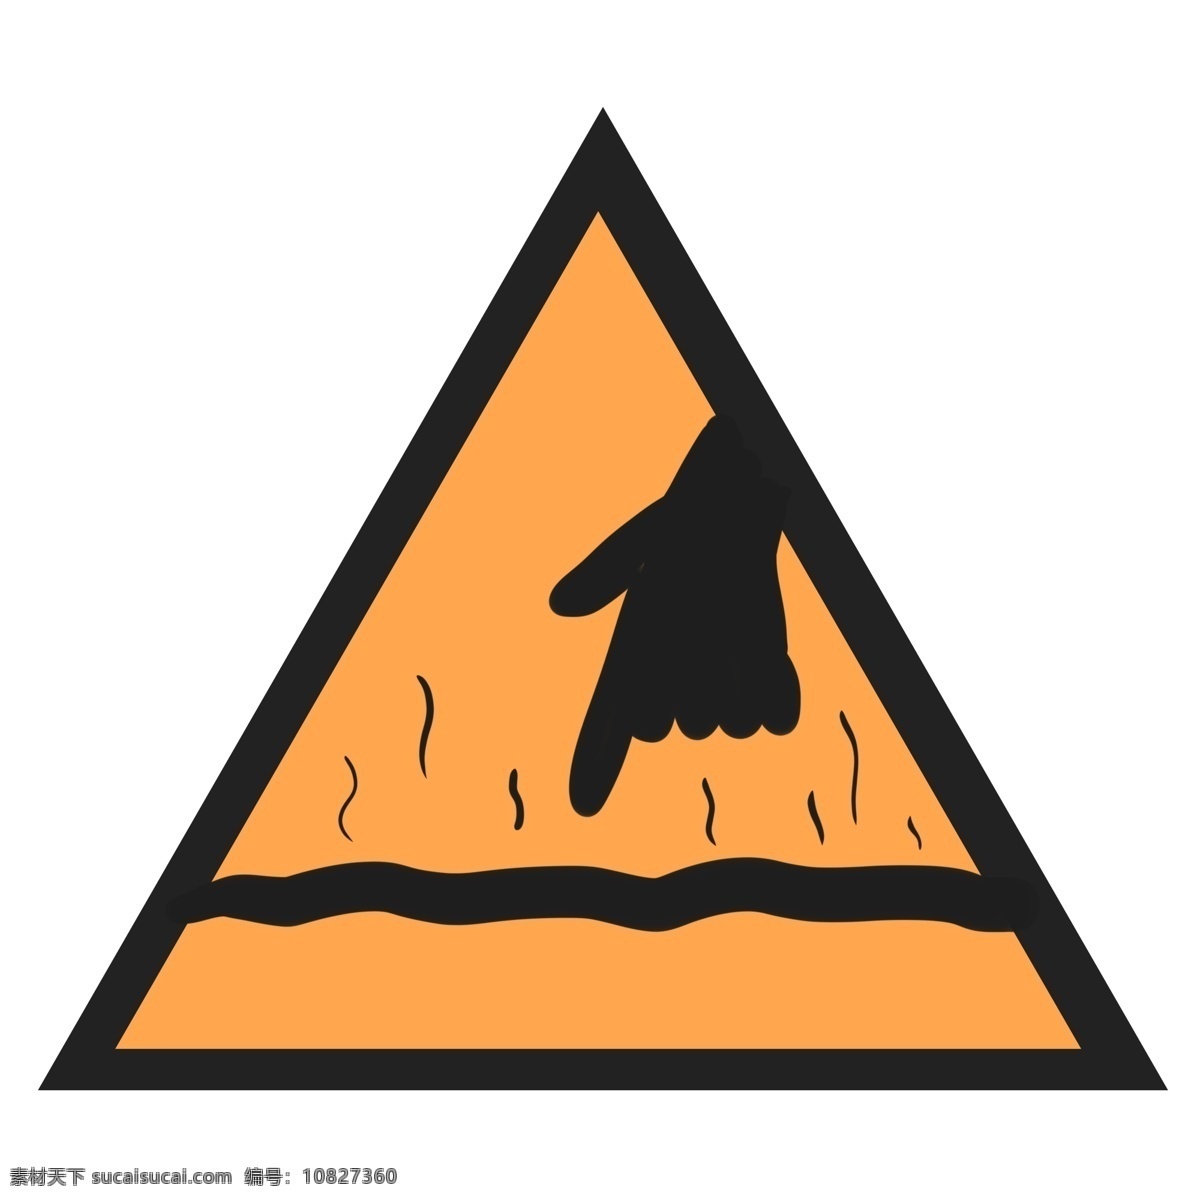 当心 高温 表面 警示牌 注意 小心 小心烫伤 注意安全 当心高温 当心高温表面 三角形警示牌 插画